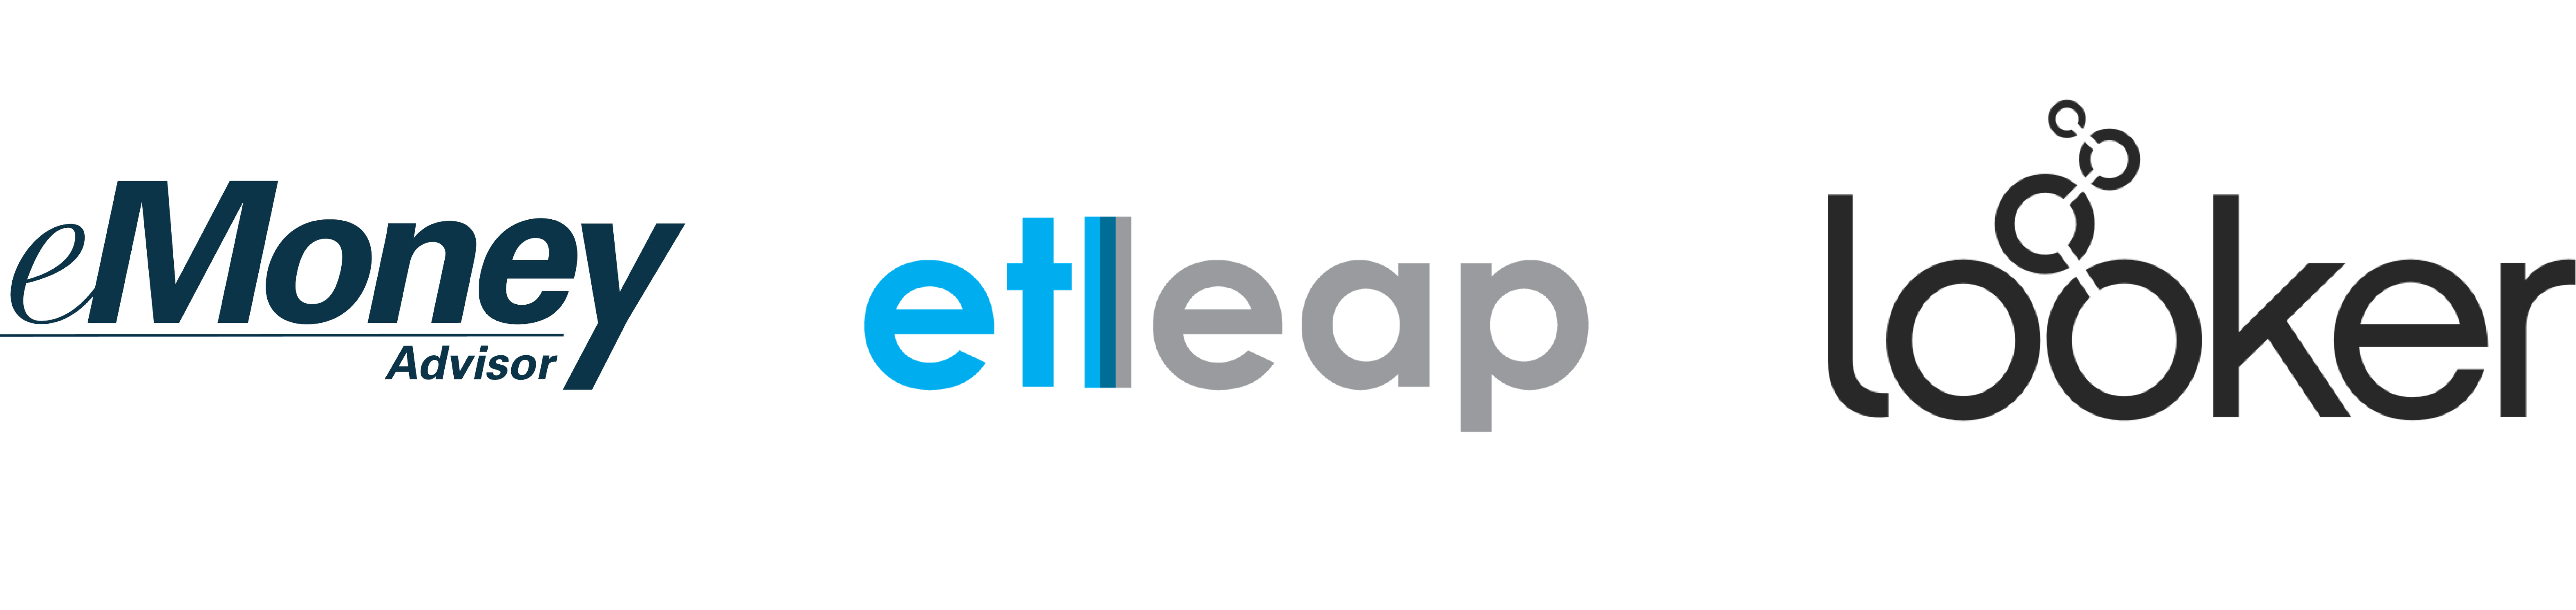 eMoney_Etleap_Looker Logo 2-2